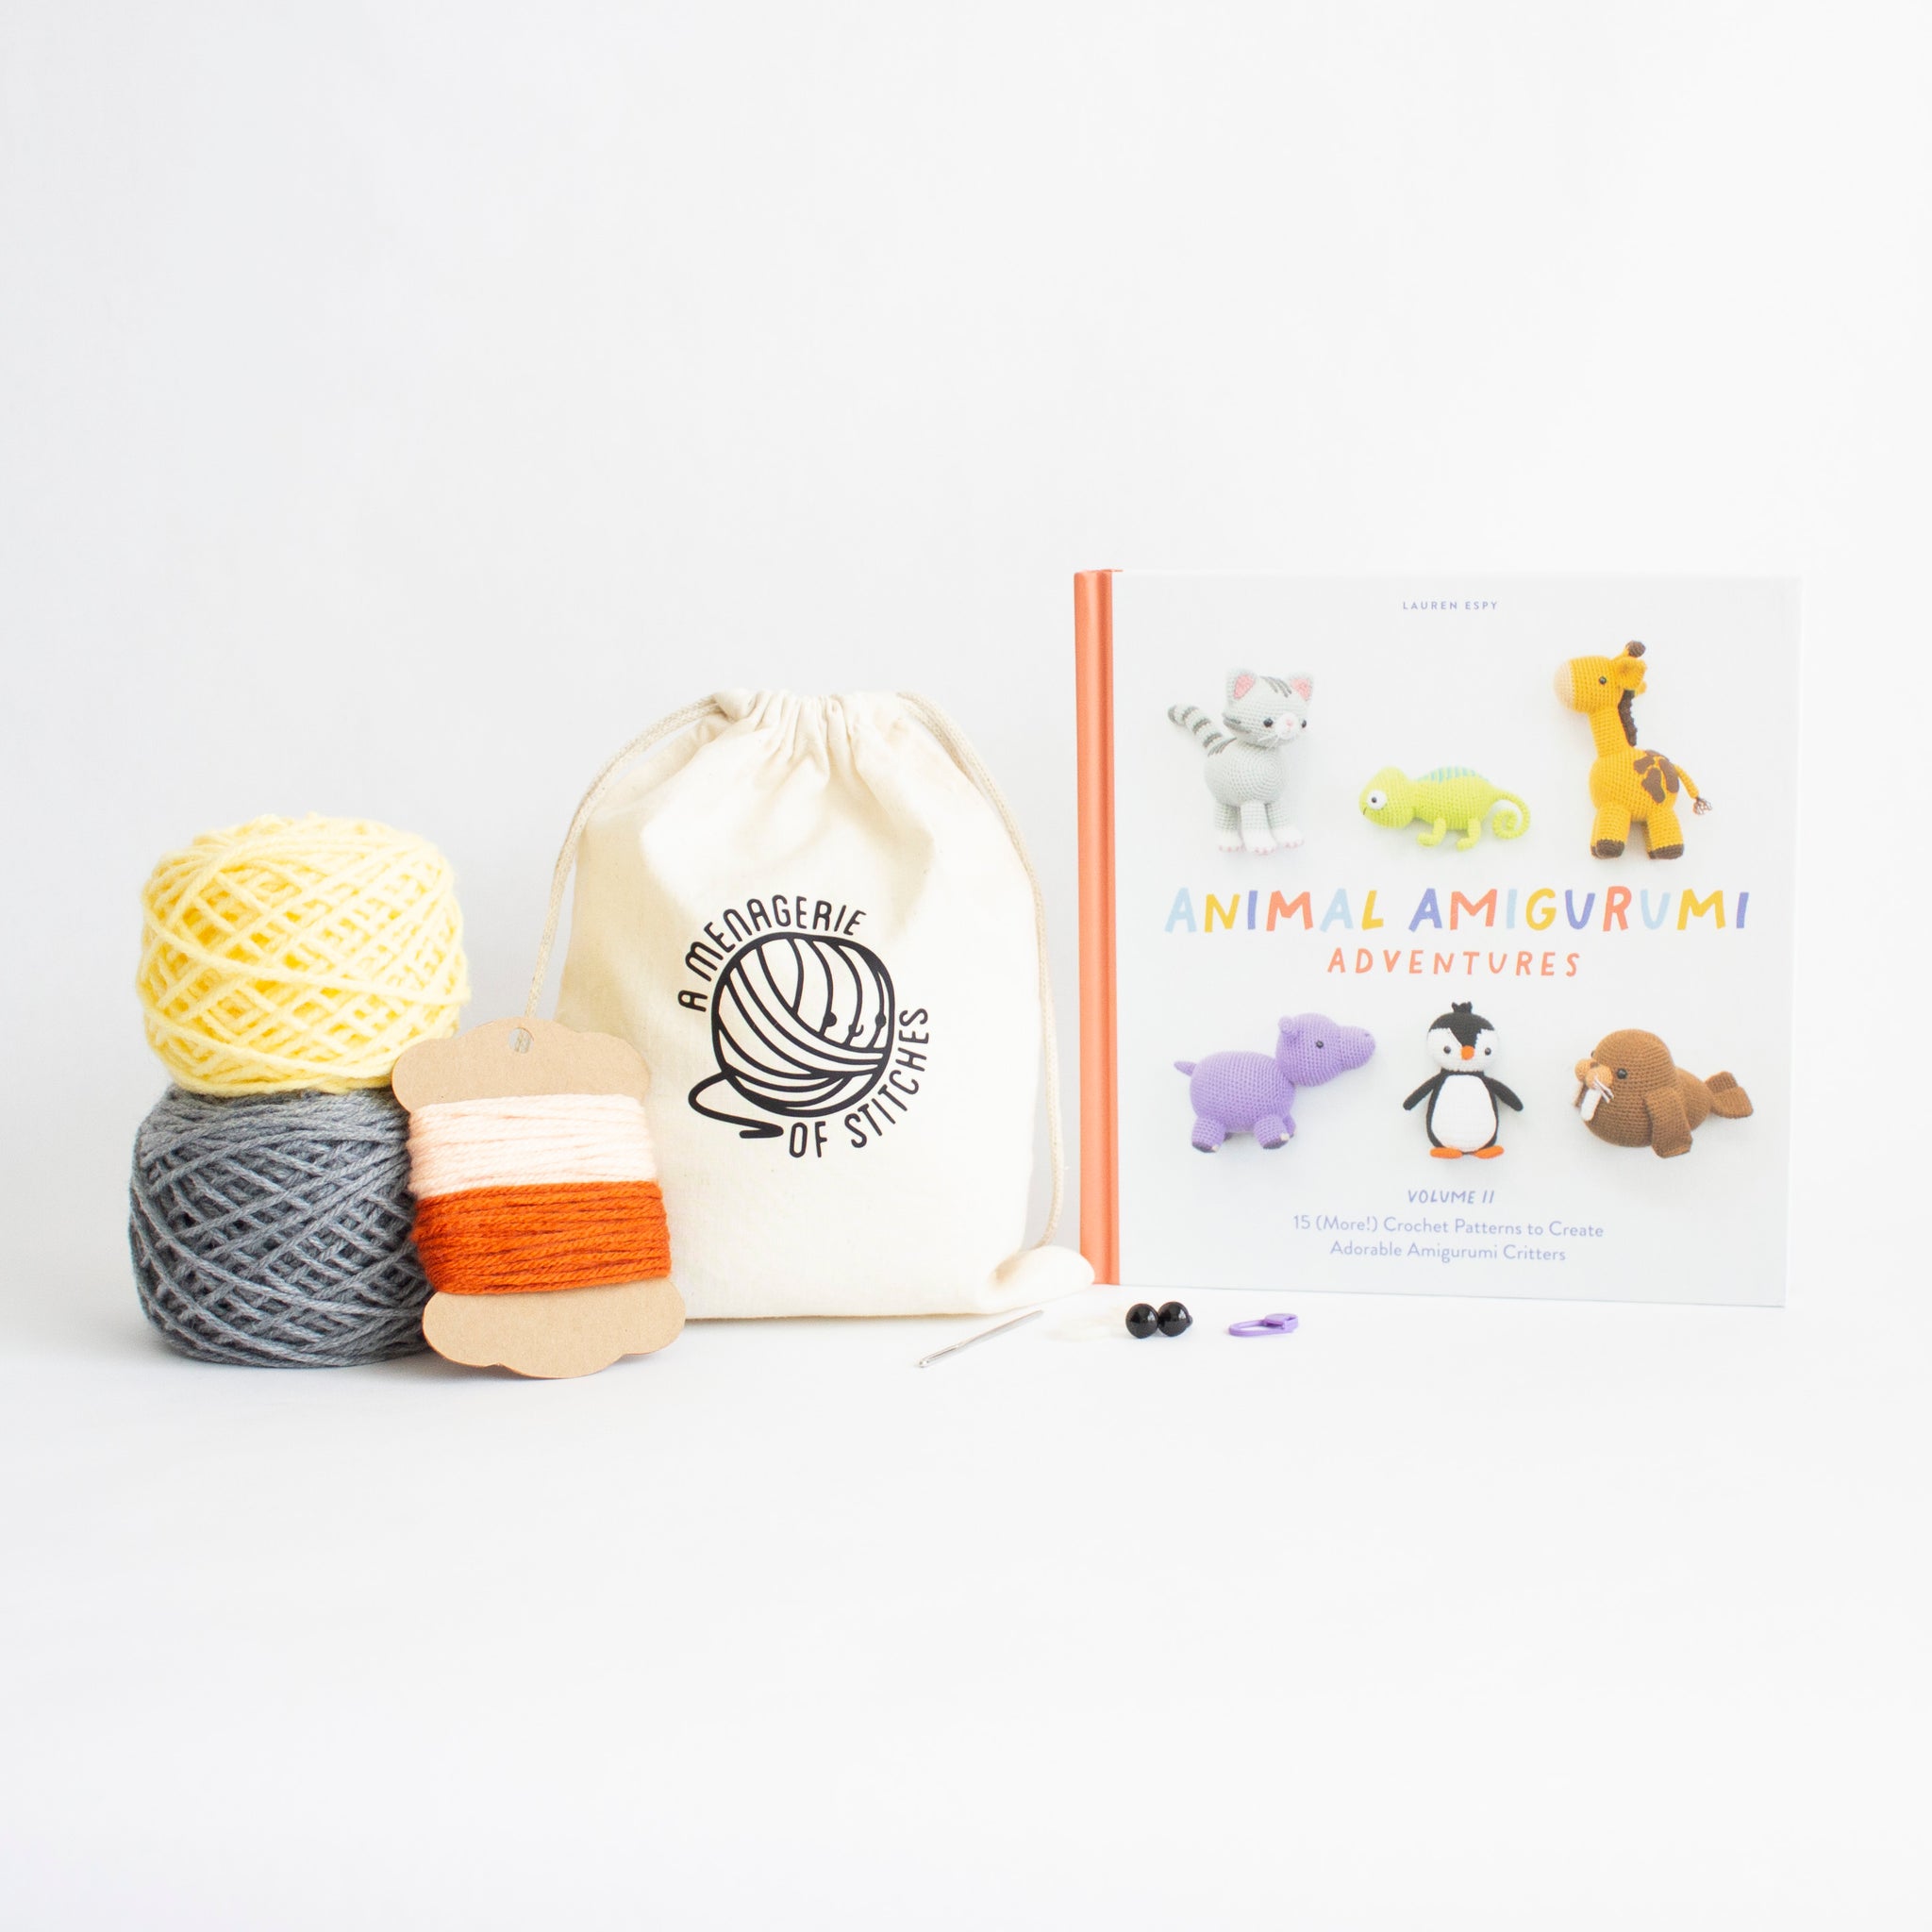 Animal Amigurumi Adventures Vol. 1: 15 Crochet Patterns to Create Adorable Amigurumi Critters [Book]